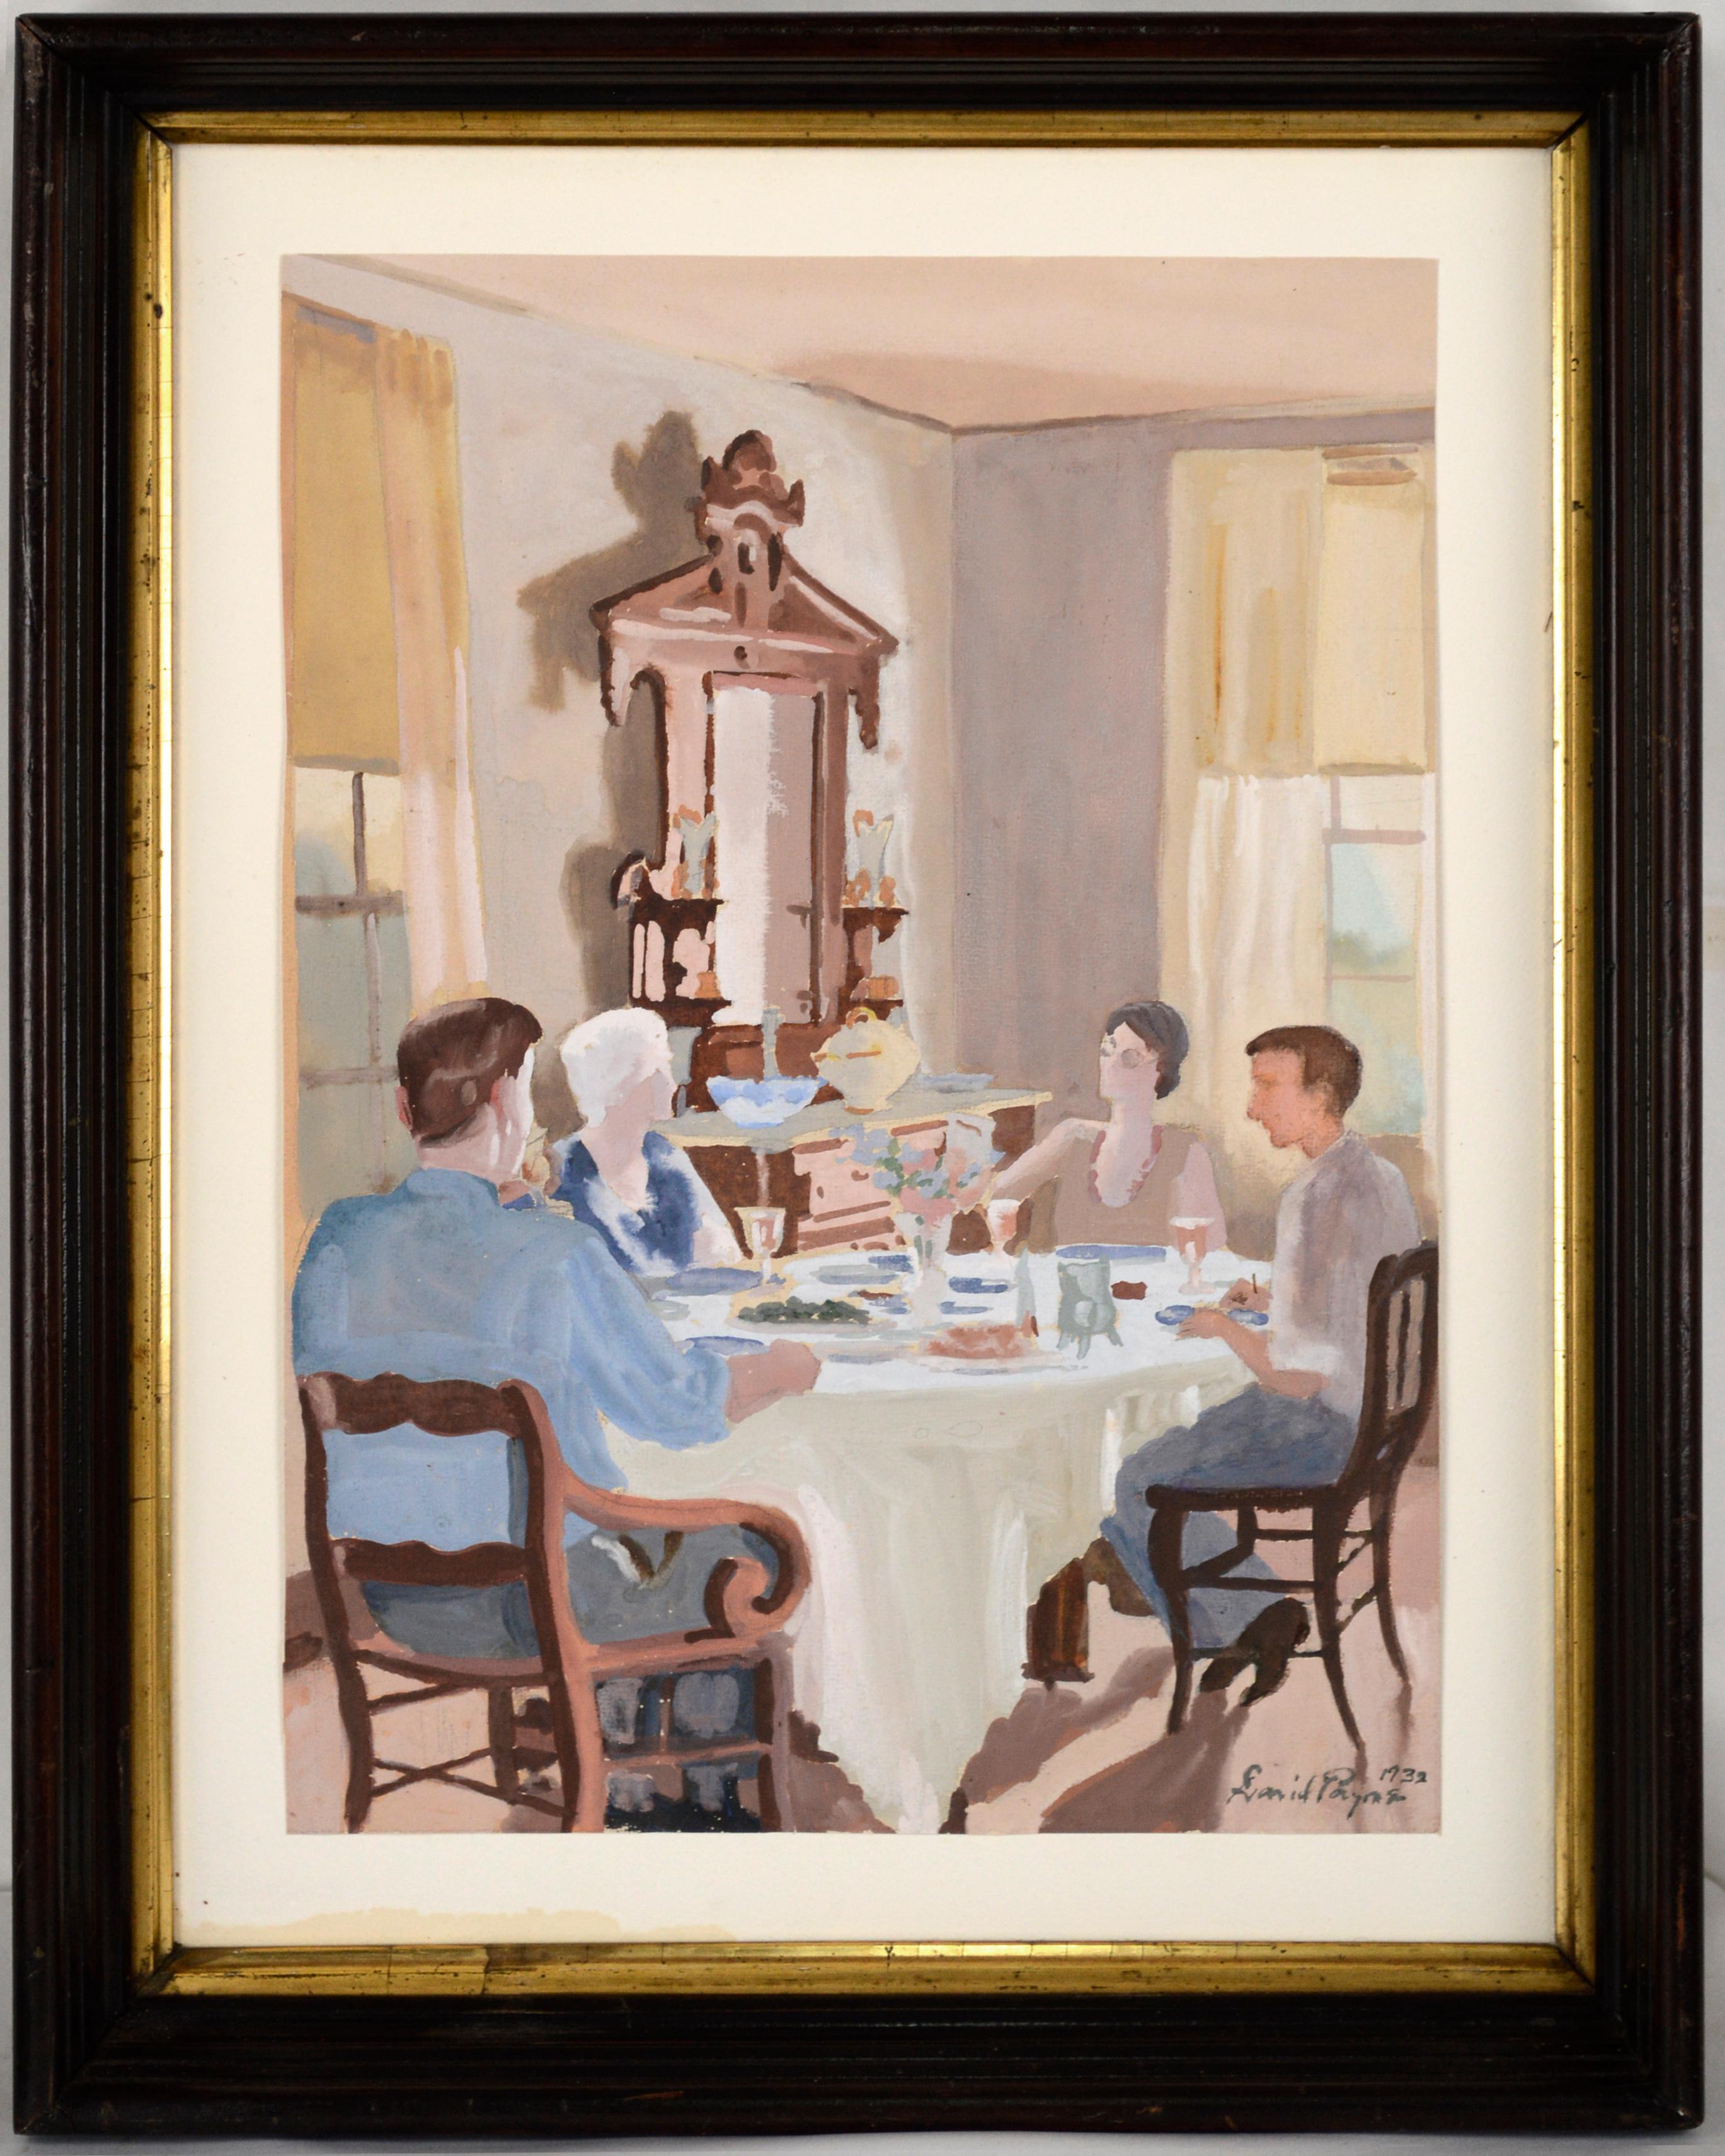 Familie Dinner Time 1932 Amerikanisches Klassisches Innenarchitekturdesign